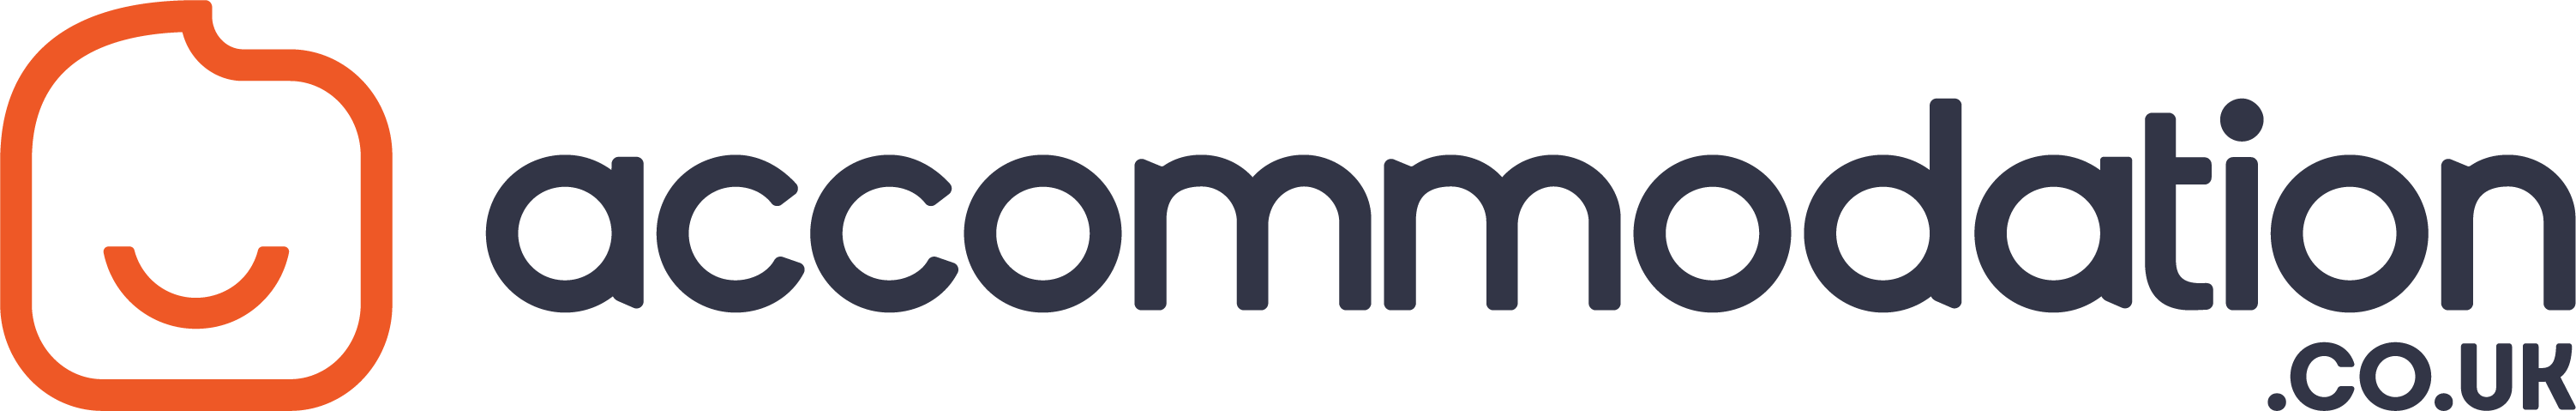 Accommodation.co.uk Logo